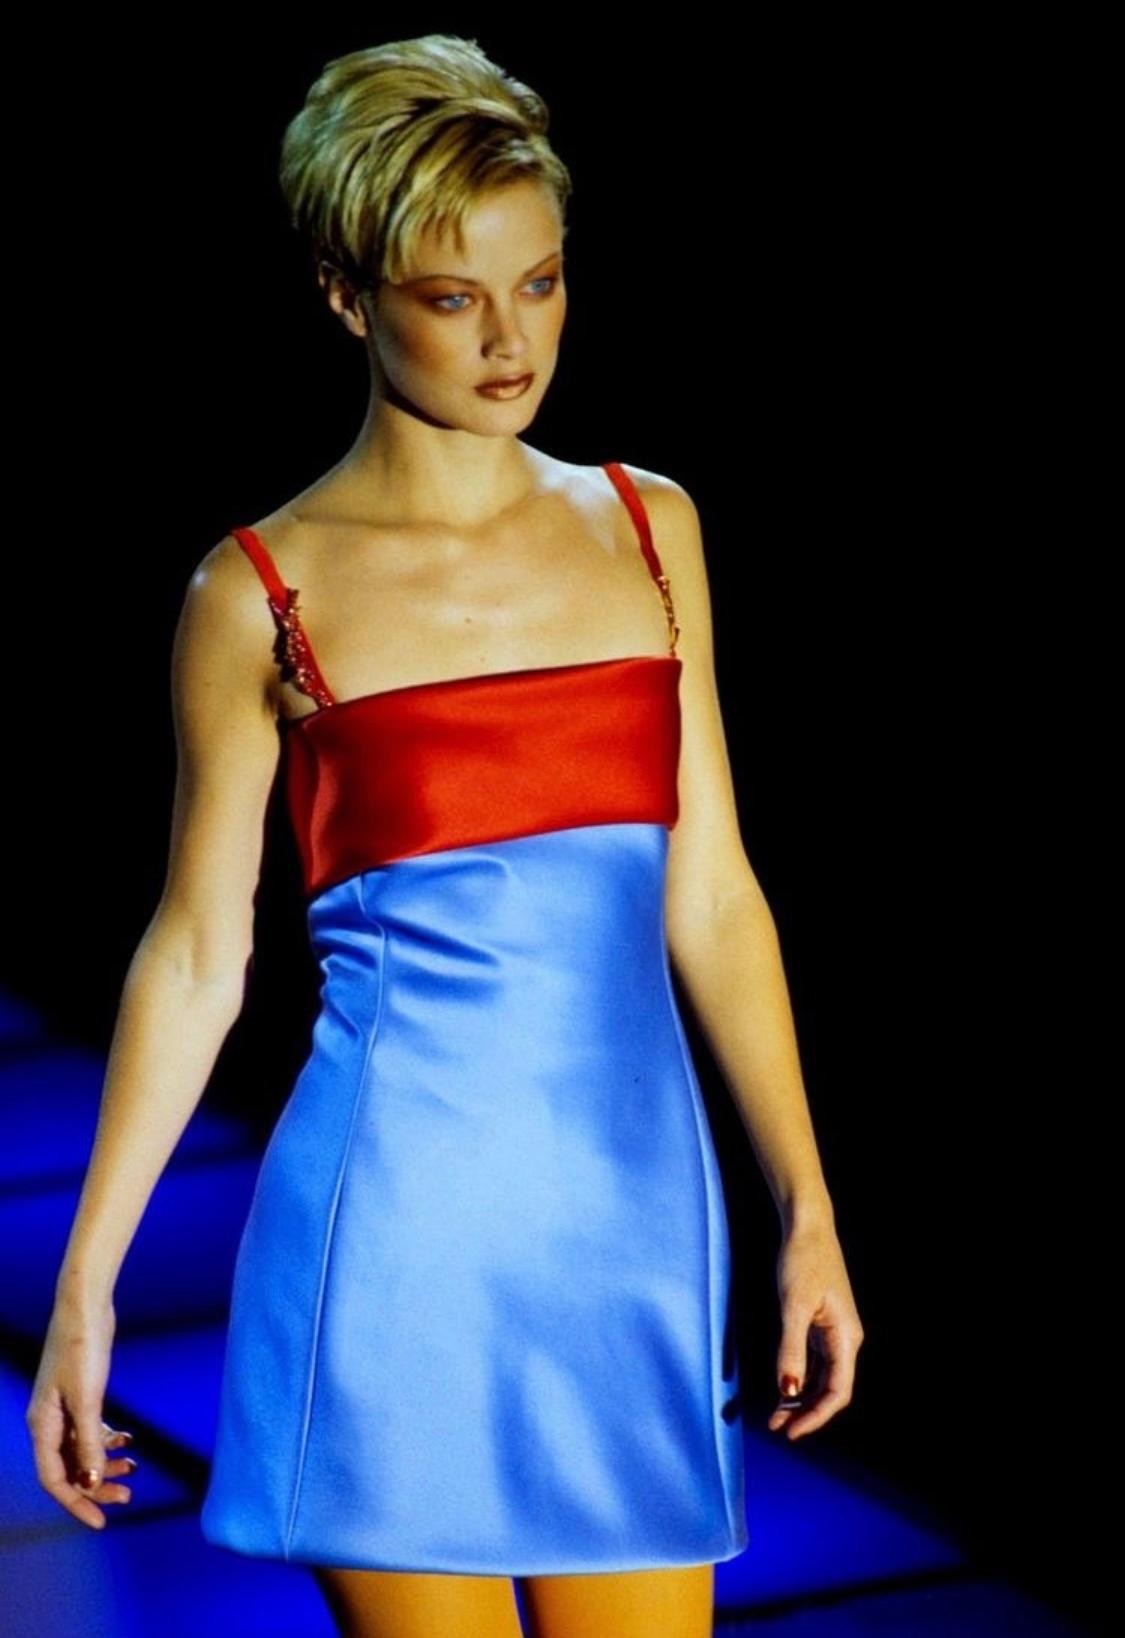 Réalisée en satin bleu vif et rouge, cette magnifique mini robe automne-hiver 1996 au motif coloré a été créée par Gianni Versace. Ce look a fait ses débuts en tant que look 42 sur le défilé F/W 1996 et a été porté par Carolyn Murphy. S'écartant de